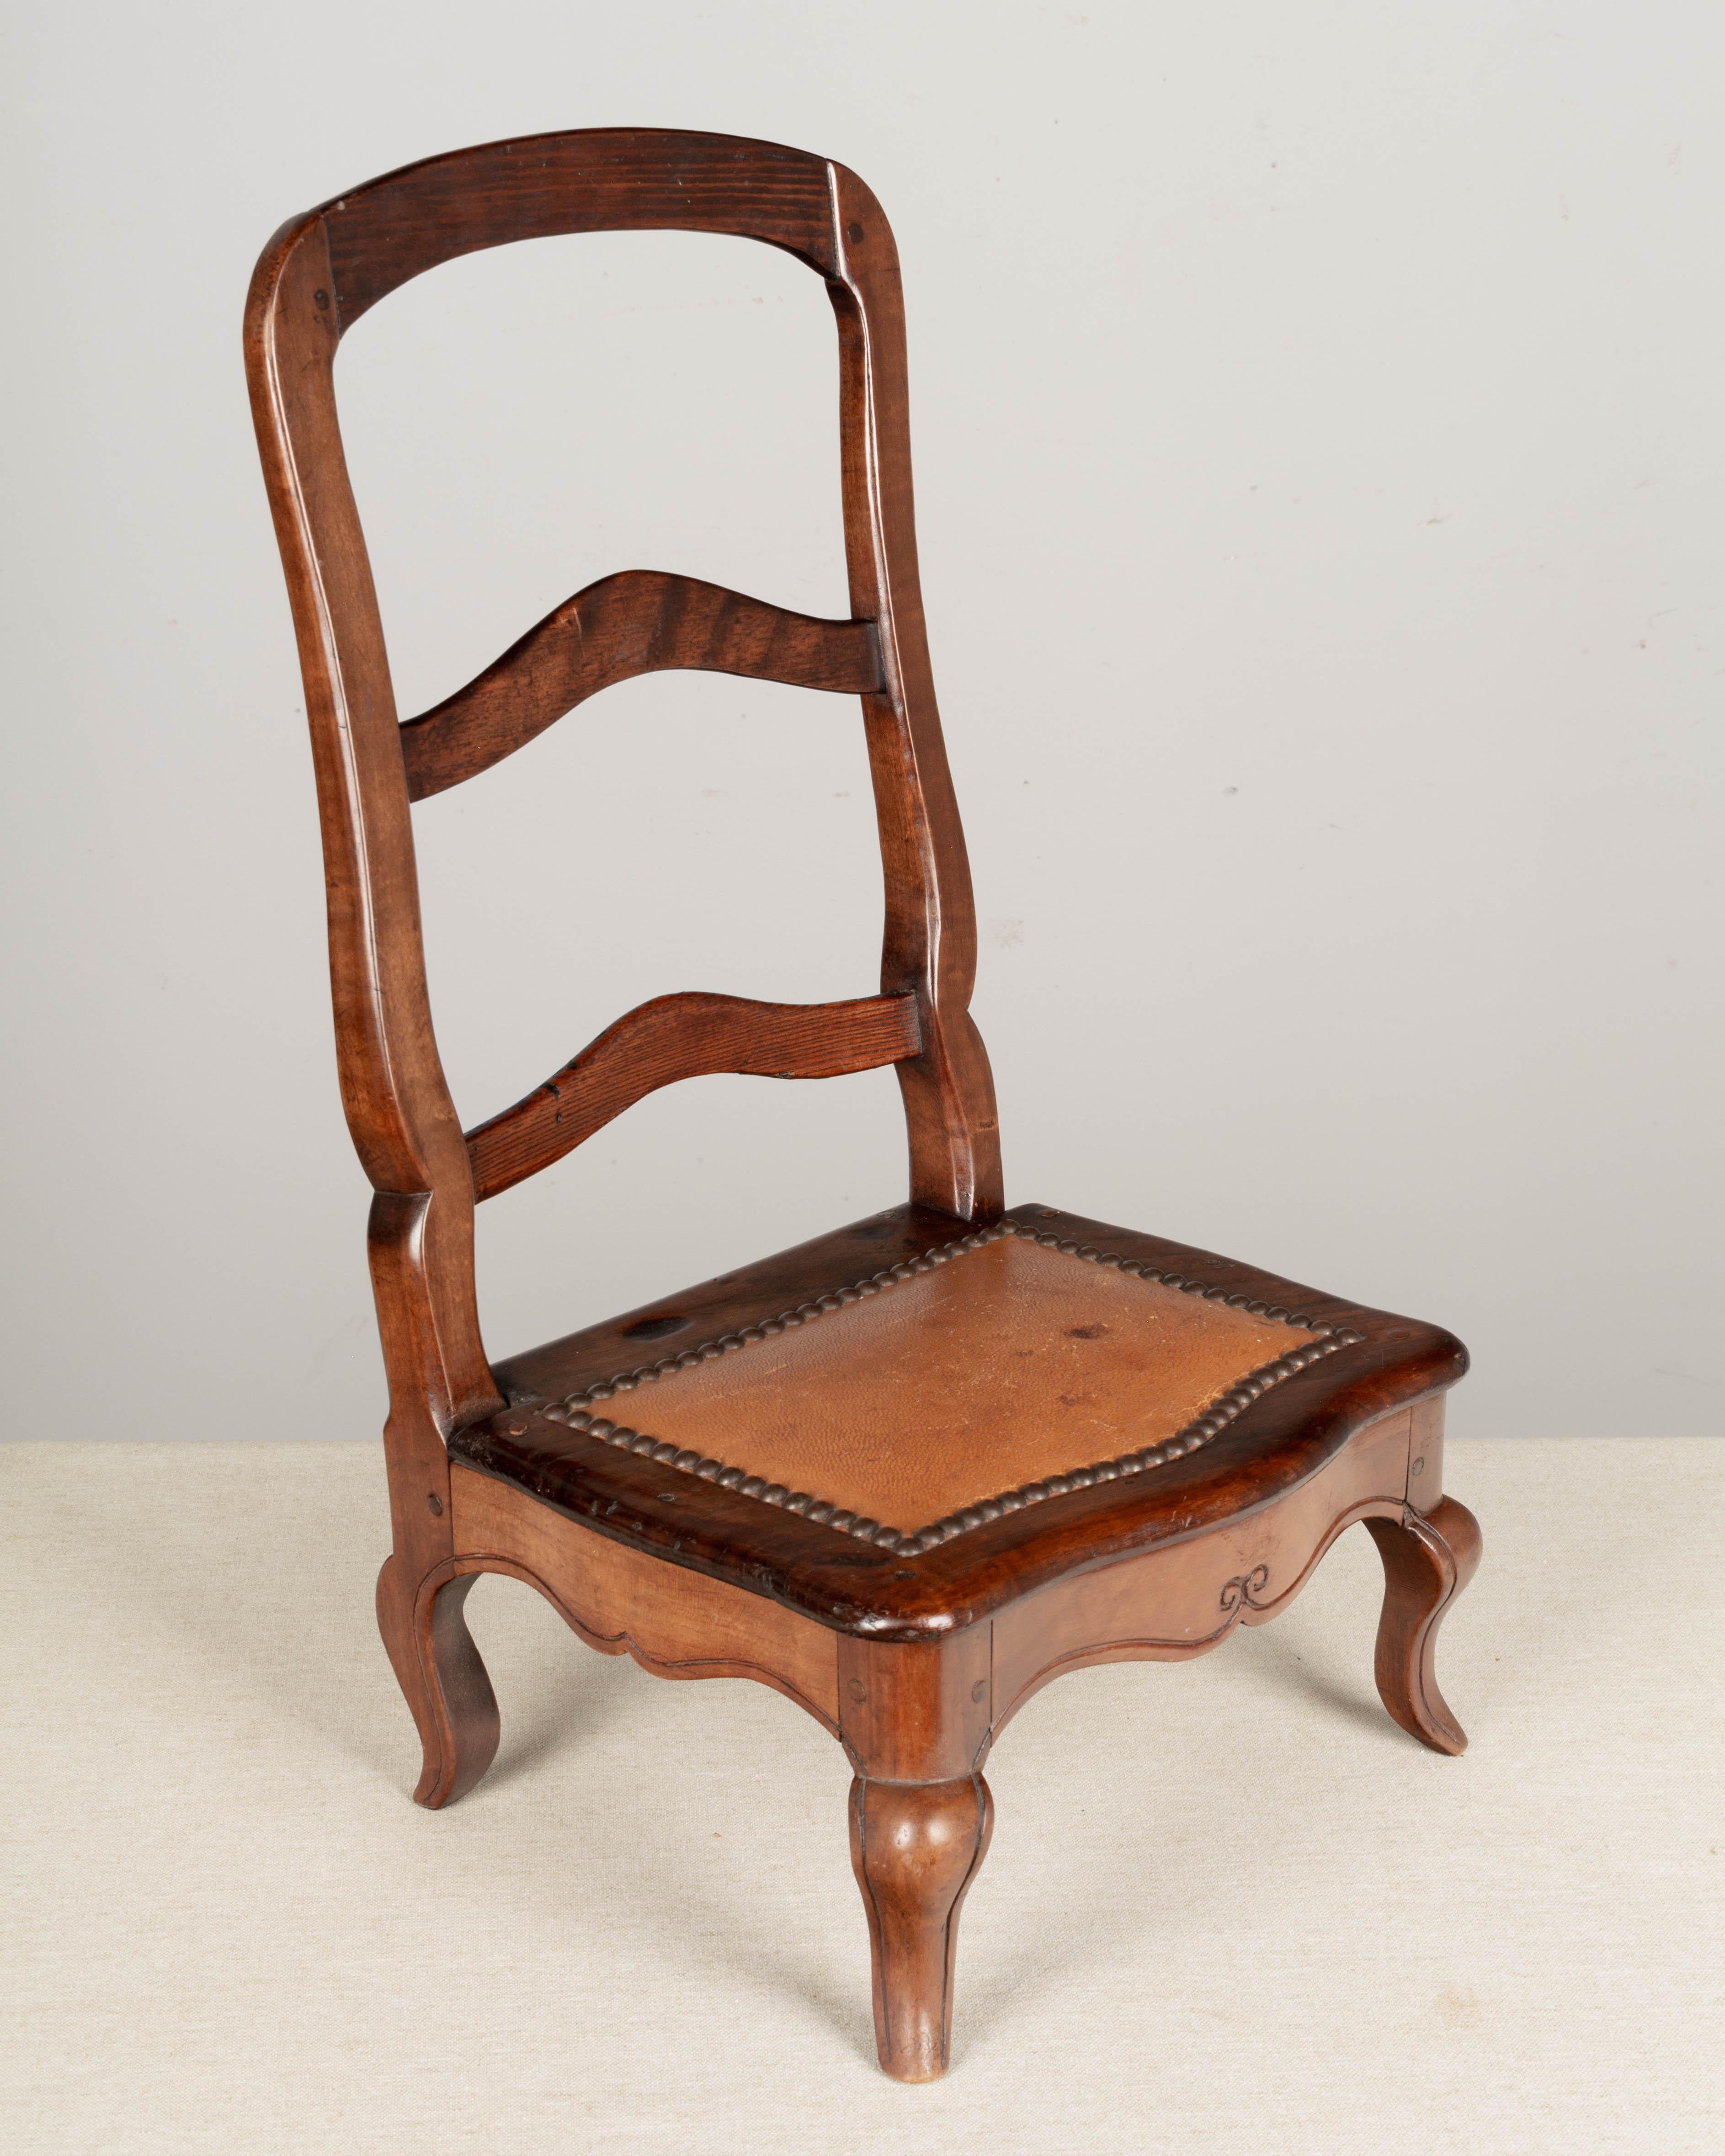 Ein kleiner Mahagoni-Musterstuhl im Louis-XV-Stil aus dem 19. Jahrhundert, handgefertigt vom Möbeltischler als Beispiel für den Stil des Stuhls, der bestellt werden kann. Leiterrücken mit Cabriole-Beinen und Ledersitz mit Nagelkopfbesatz.